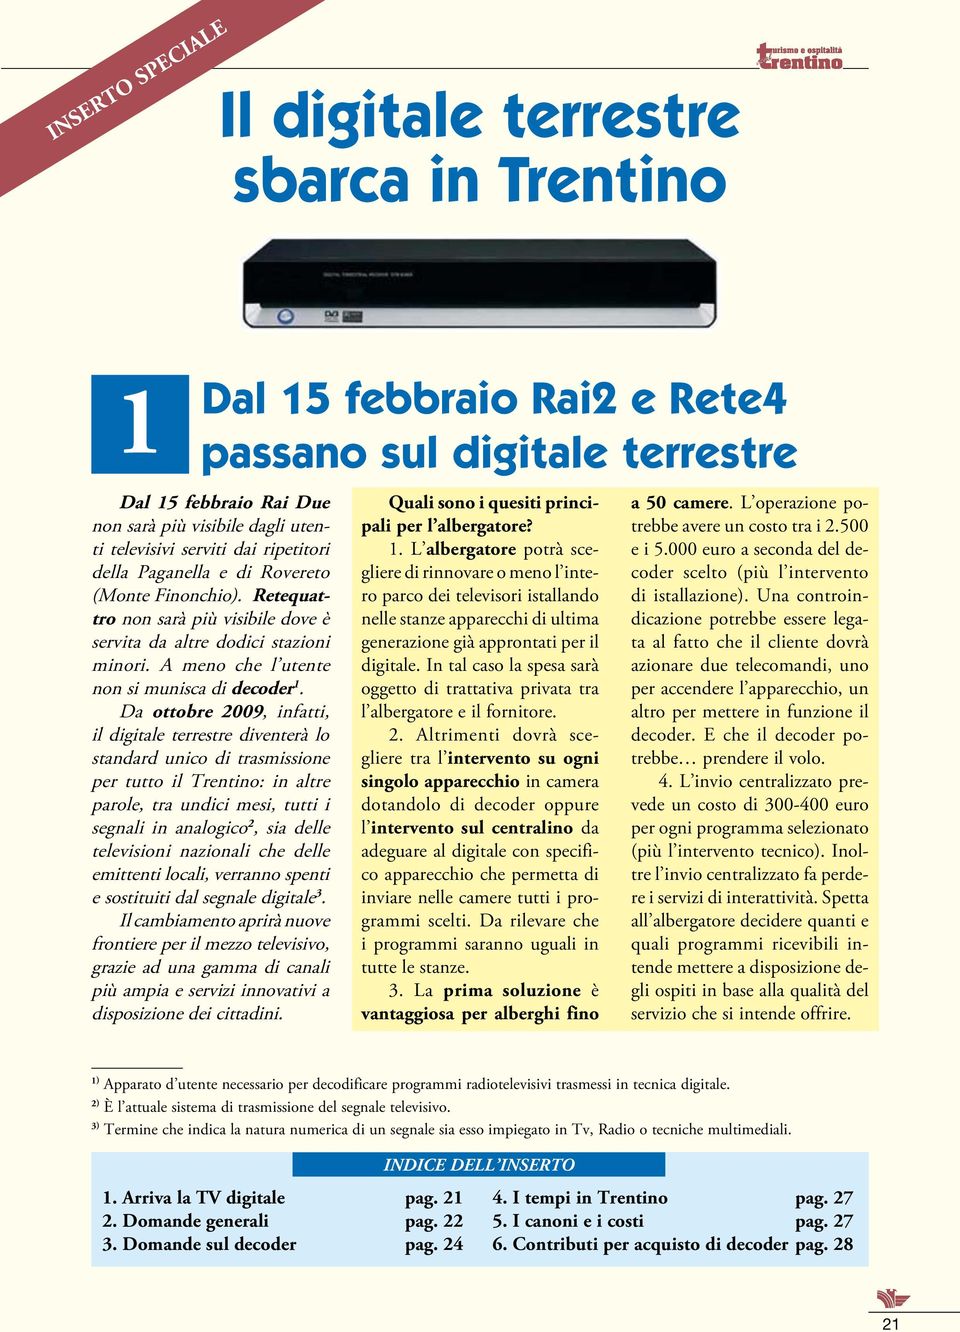 Da ottobre 2009, infatti, il digitale terrestre diventerà lo standard unico di trasmissione per tutto il Trentino: in altre parole, tra undici mesi, tutti i segnali in analogico 2, sia delle